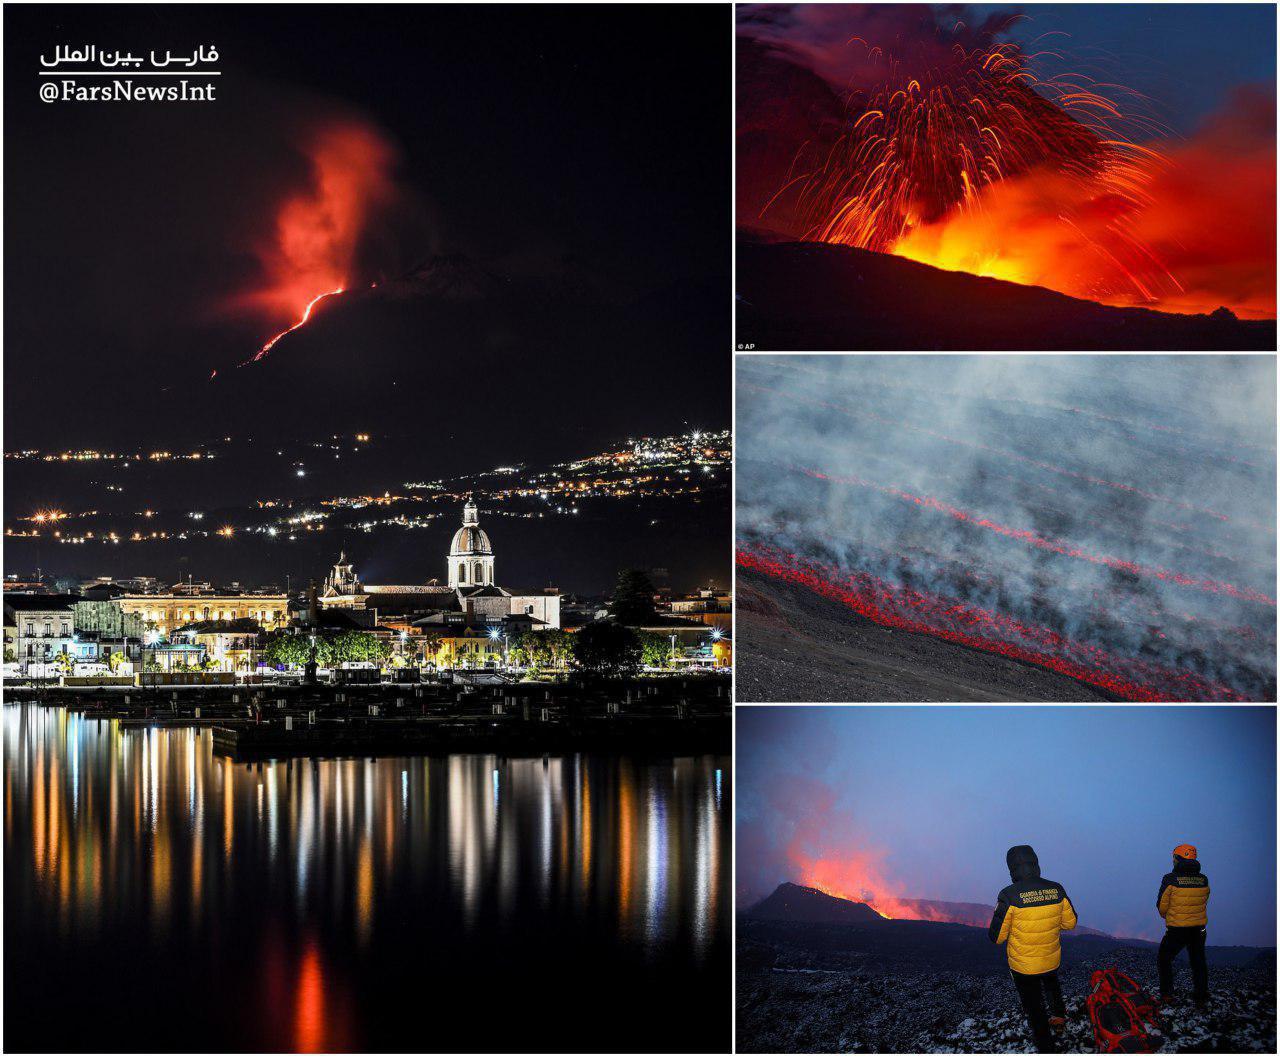 فوران آتشفشان «اتنا» در سیسیل ایتالیا (+عکس)